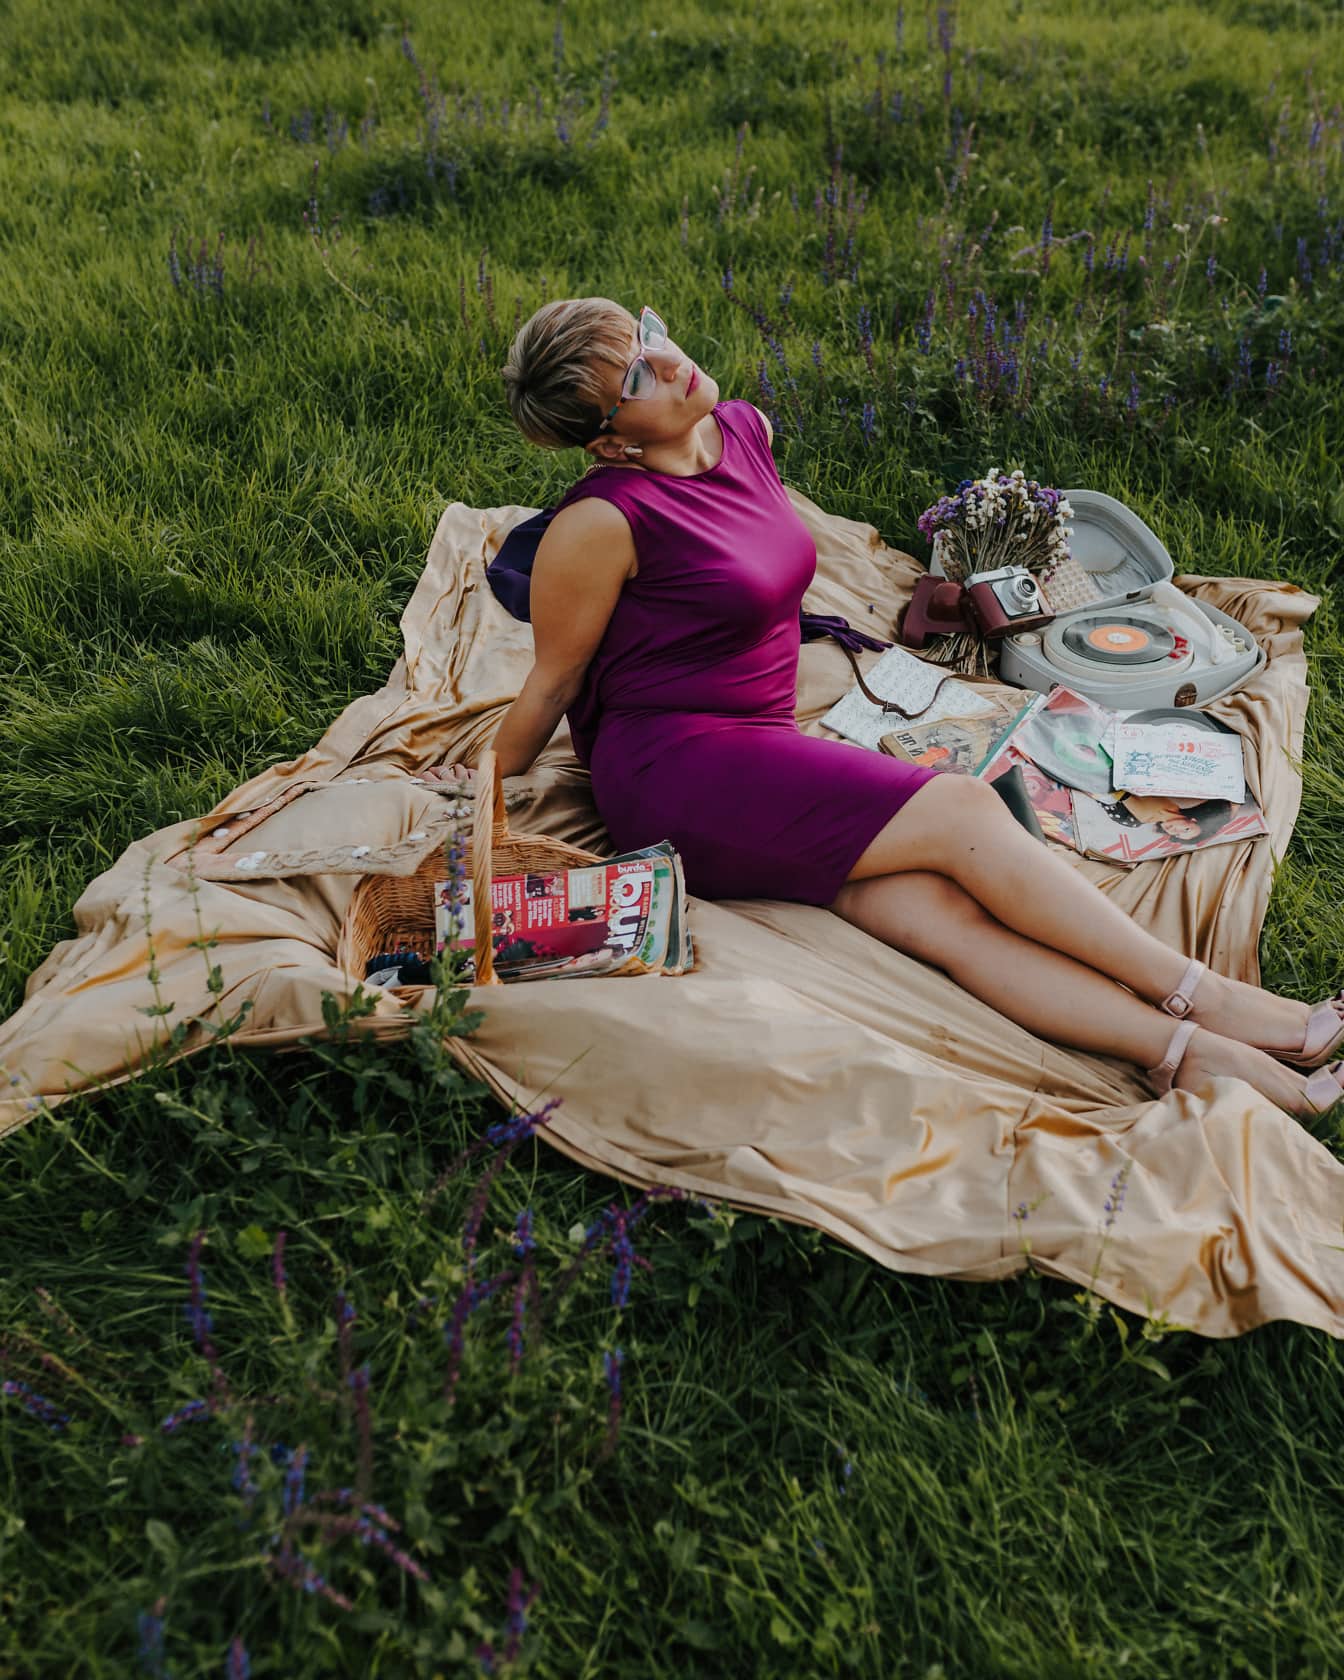 Mooie vrouwenzitting op picknickdeken in purpere kleding